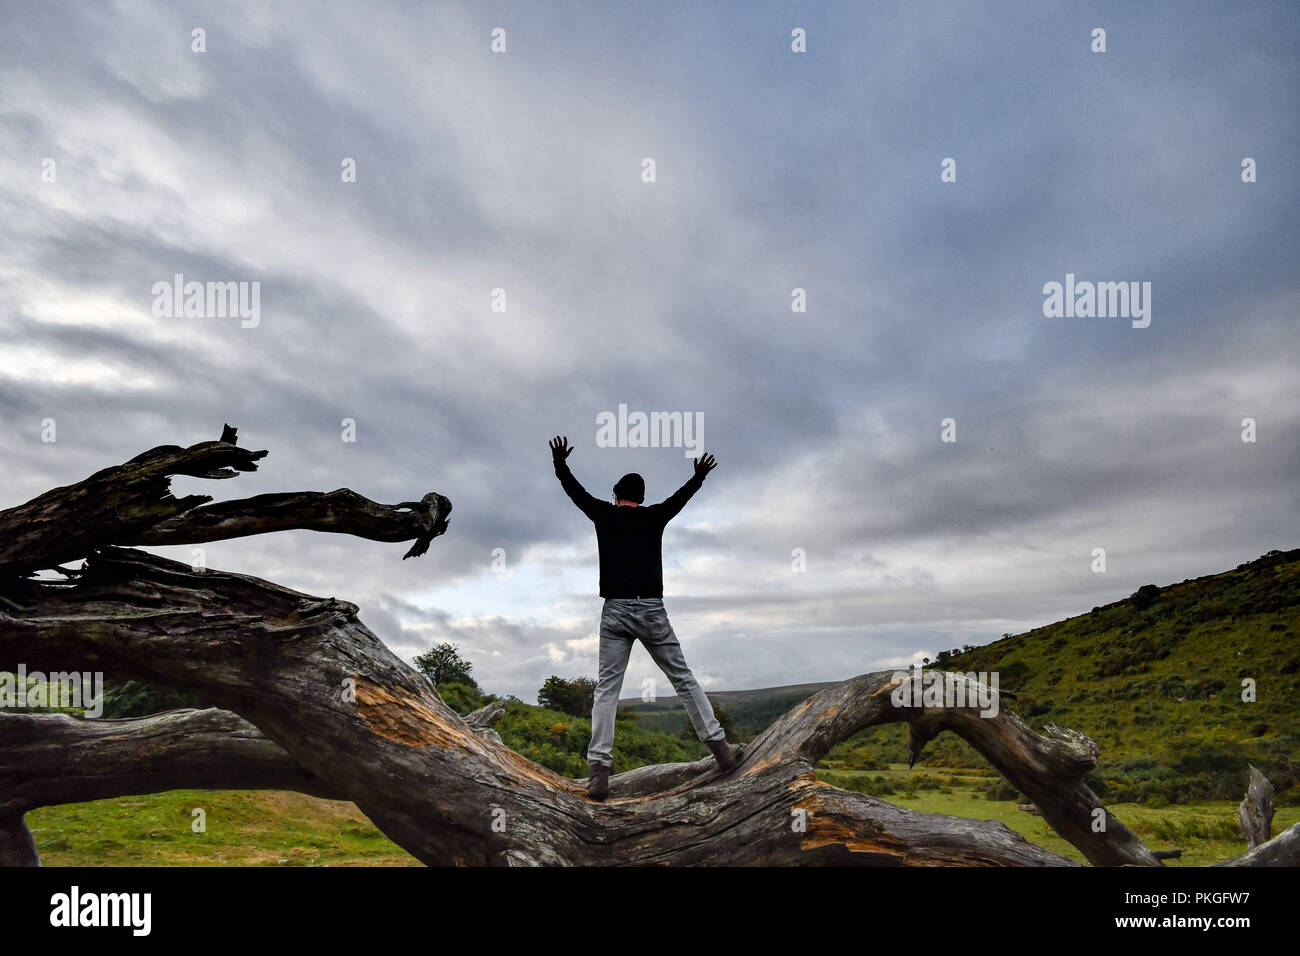 Hombre de pie sobre el árbol caído en Dartmoor, mirando hacia un cielo nublado Foto de stock